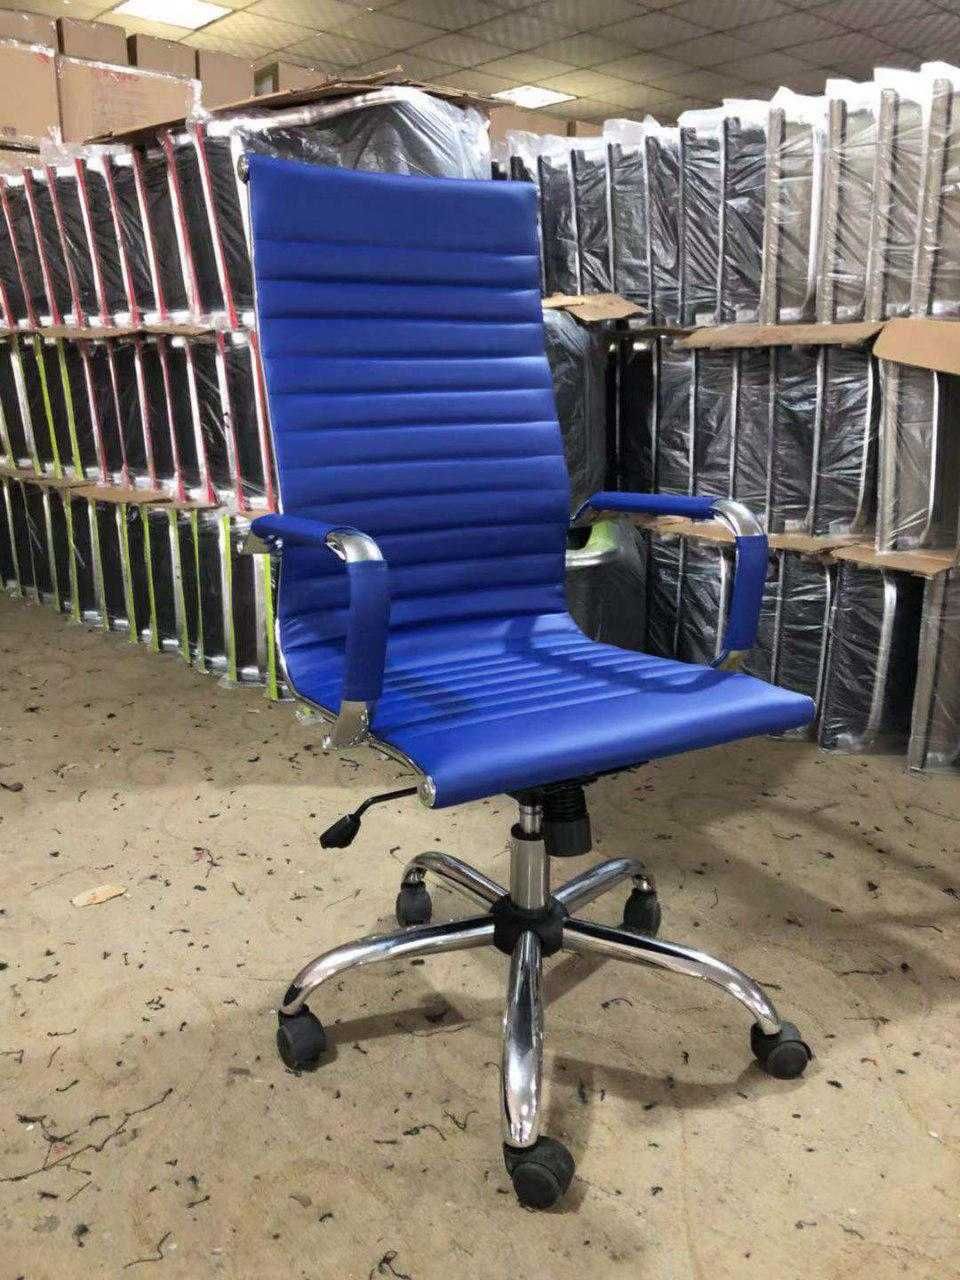 Офисное кресло DELGADO (+доставка, гарантия)